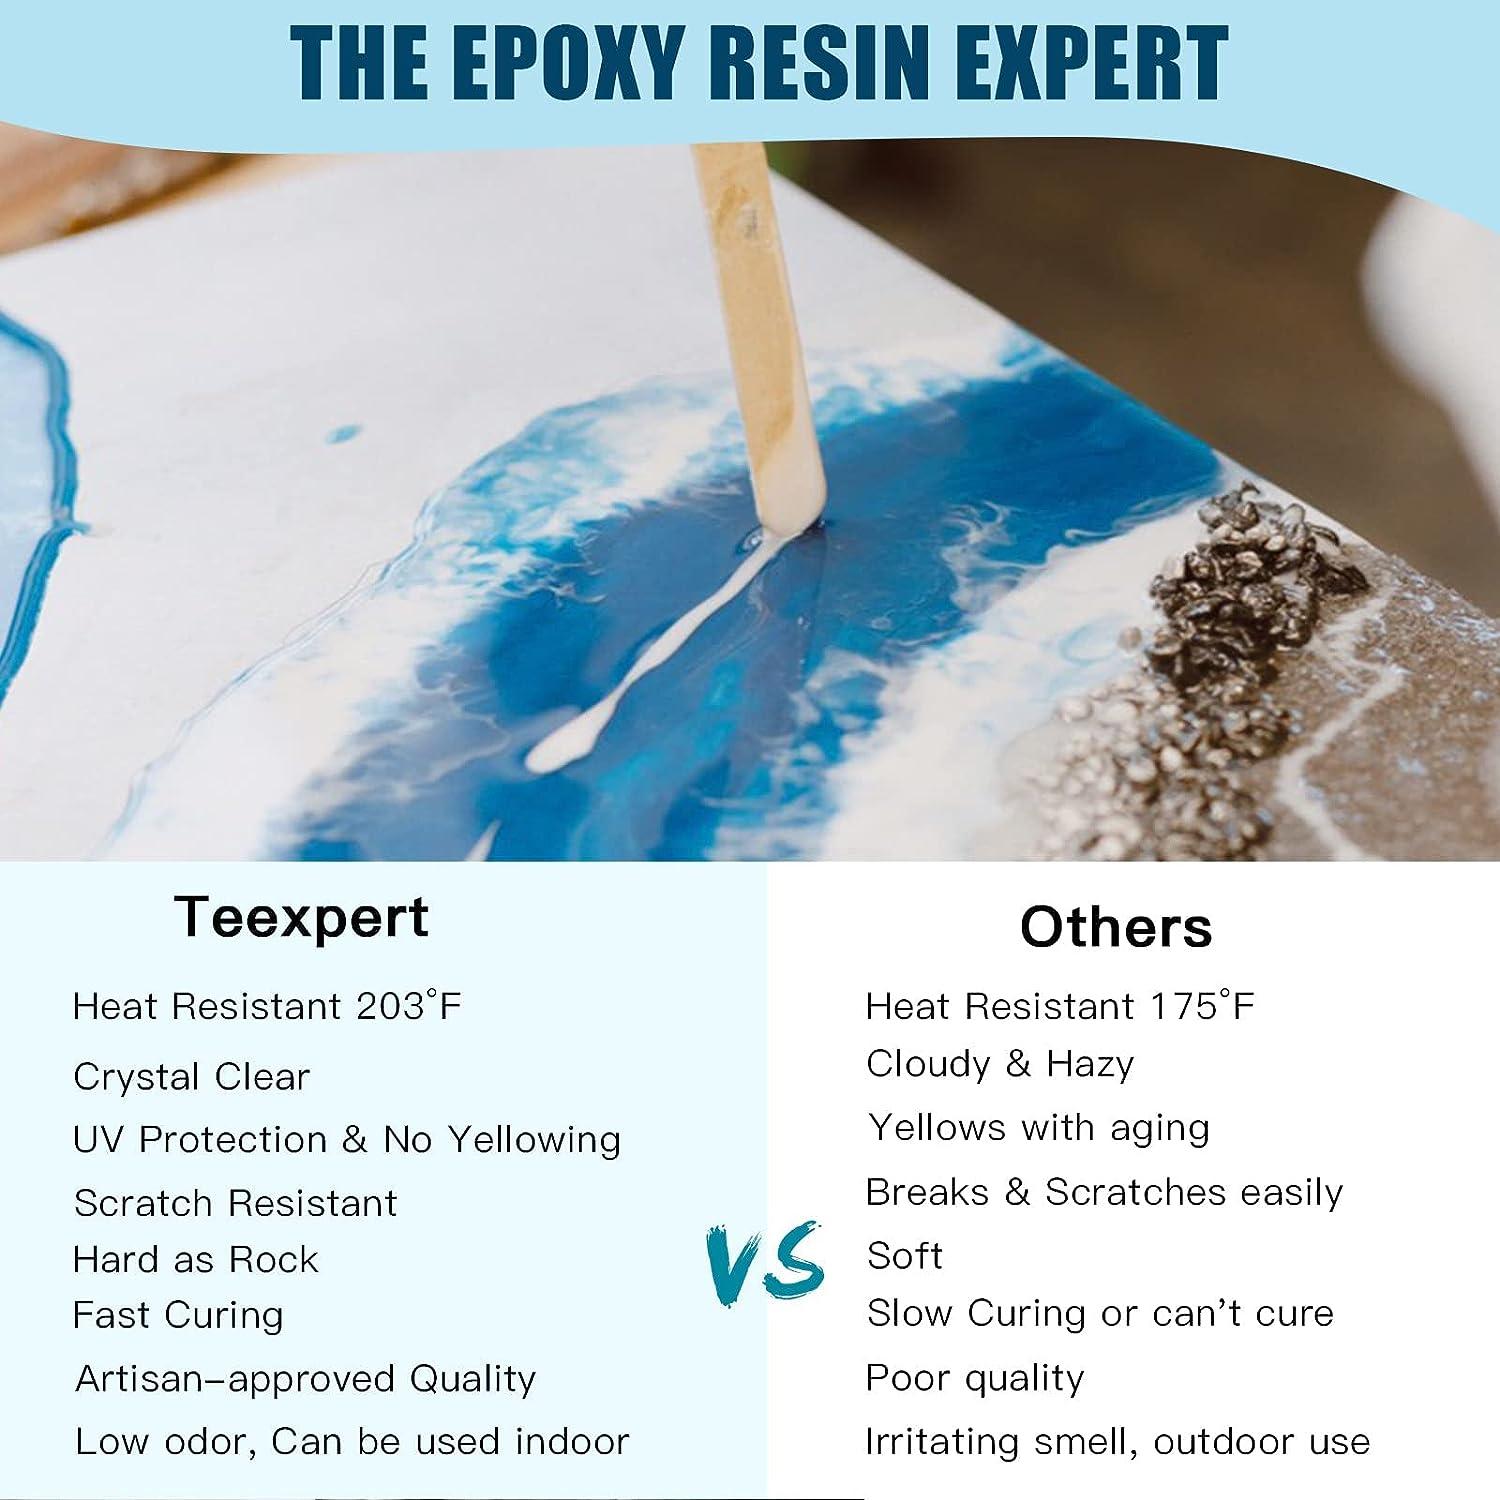 Epoxy Resin Kit for Beginners